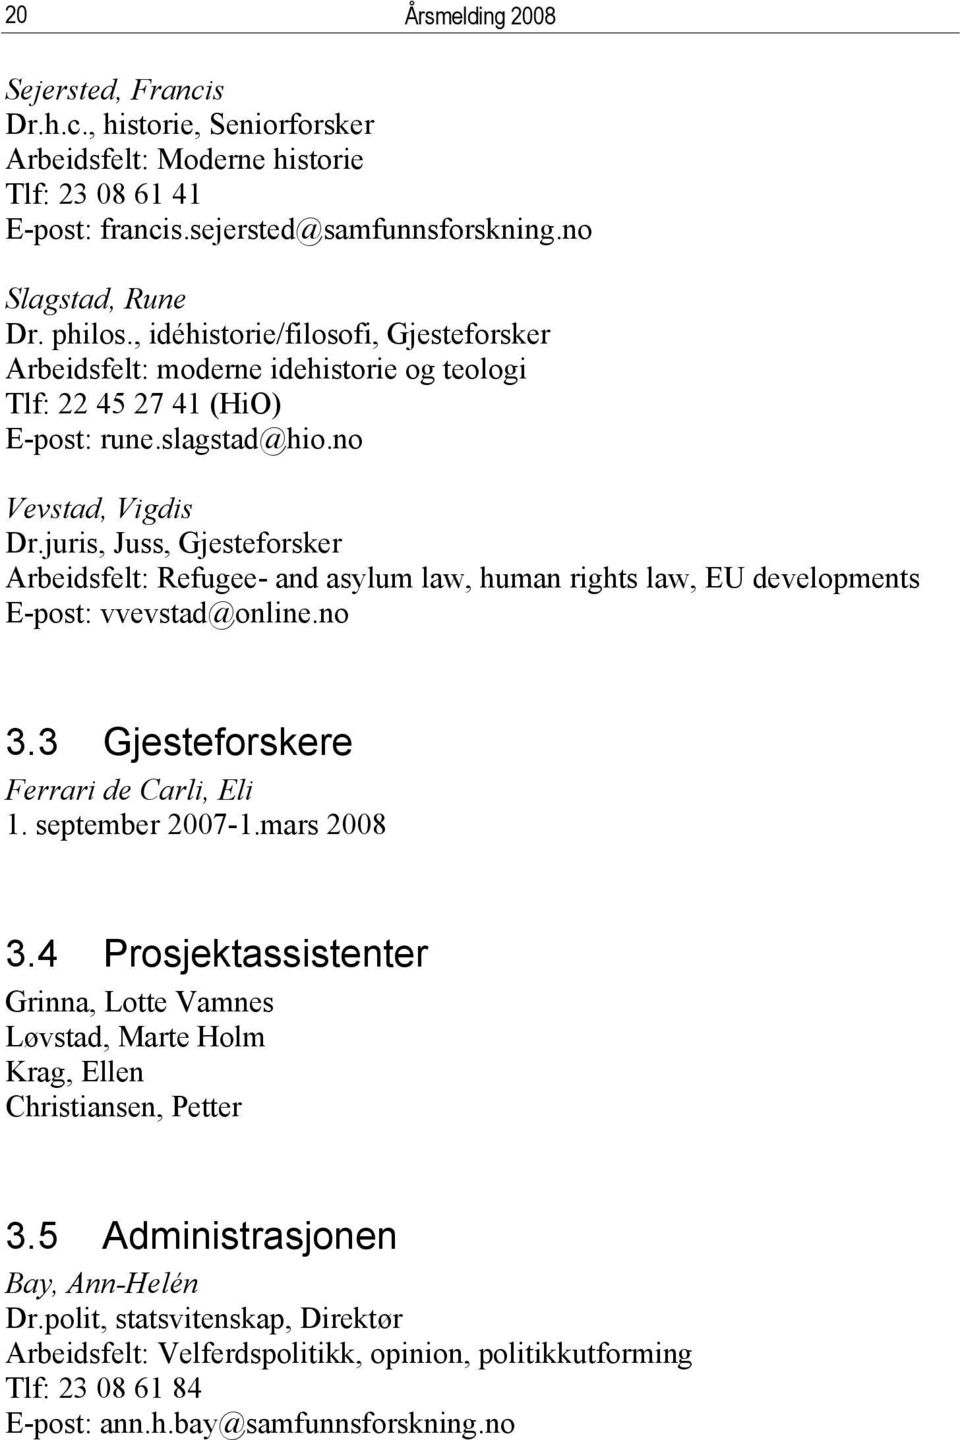 juris, Juss, Gjesteforsker Arbeidsfelt: Refugee- and asylum law, human rights law, EU developments E-post: vvevstad@online.no 3.3 Gjesteforskere Ferrari de Carli, Eli 1. september 2007-1.mars 2008 3.